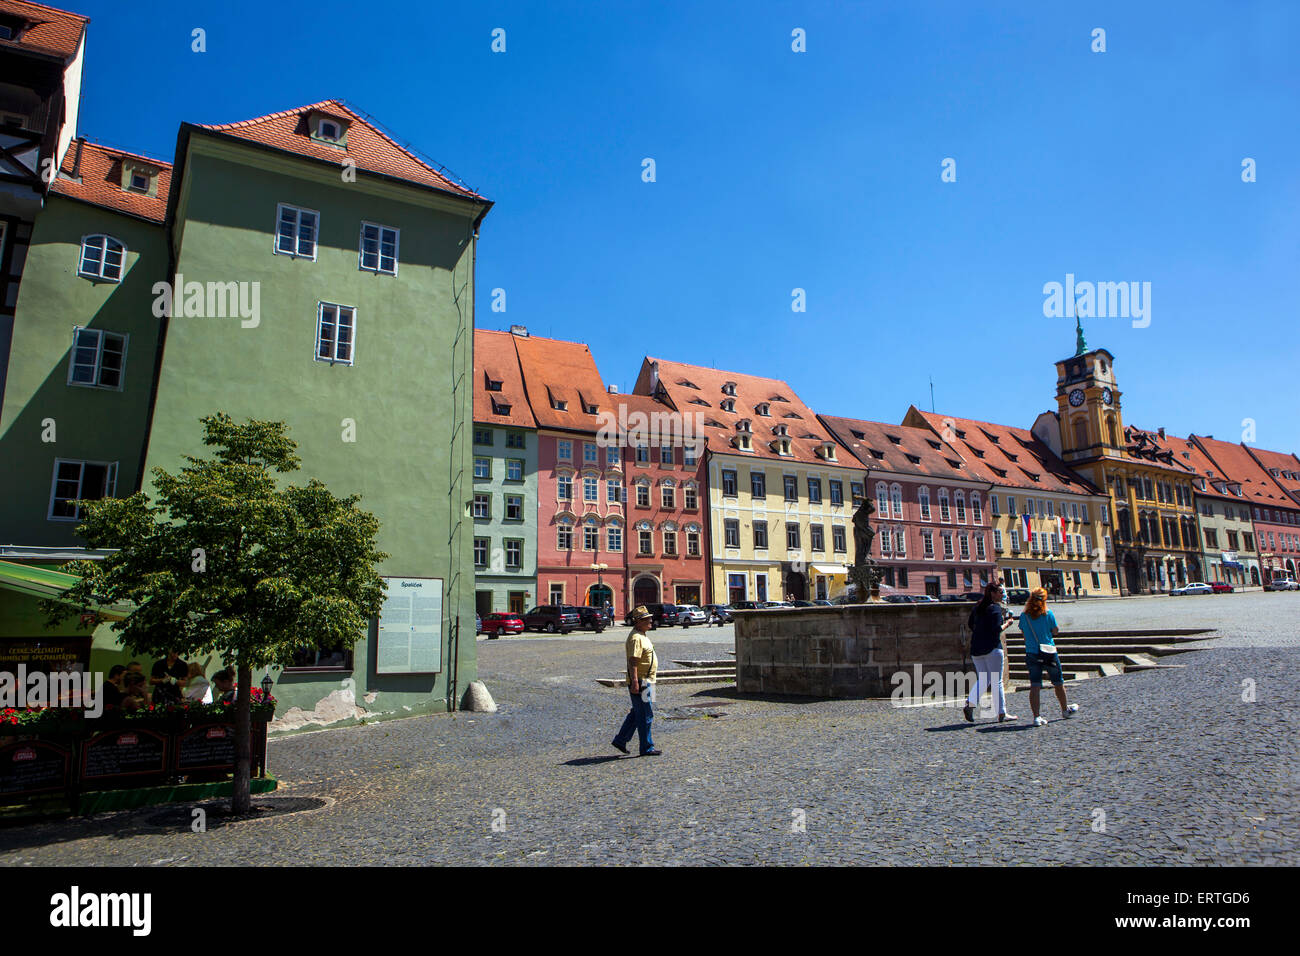 La vieille ville historique Cheb, Bohême occidentale, République tchèque Banque D'Images